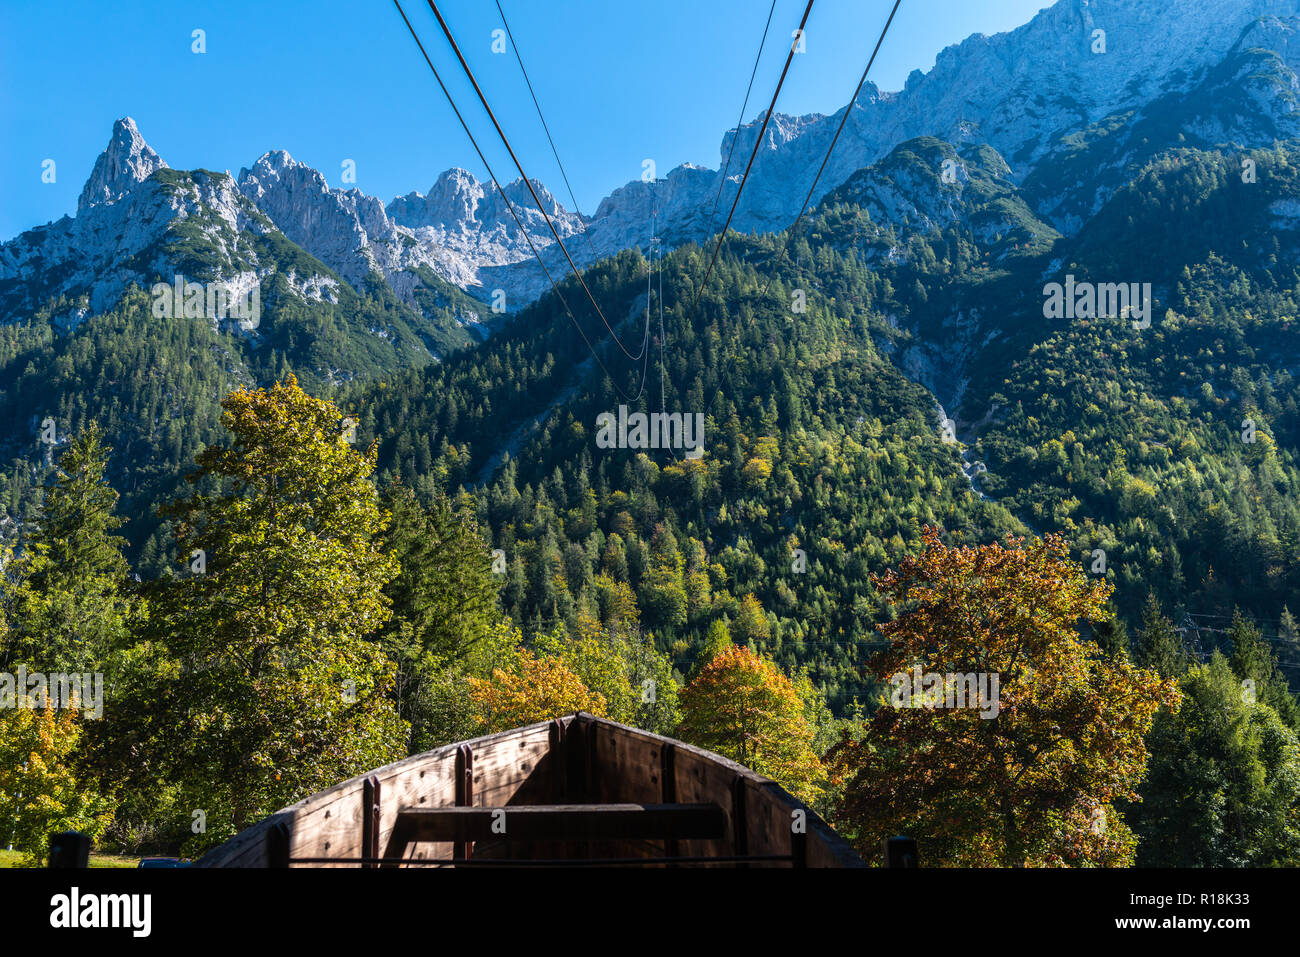 La station de la vallée, ou le téléphérique Karwendelbahn Karwendel, Mittenwald, Karwendelgebirge ou montagnes du Karwendel, les Alpes, Bavaria, Germany, Europe Banque D'Images